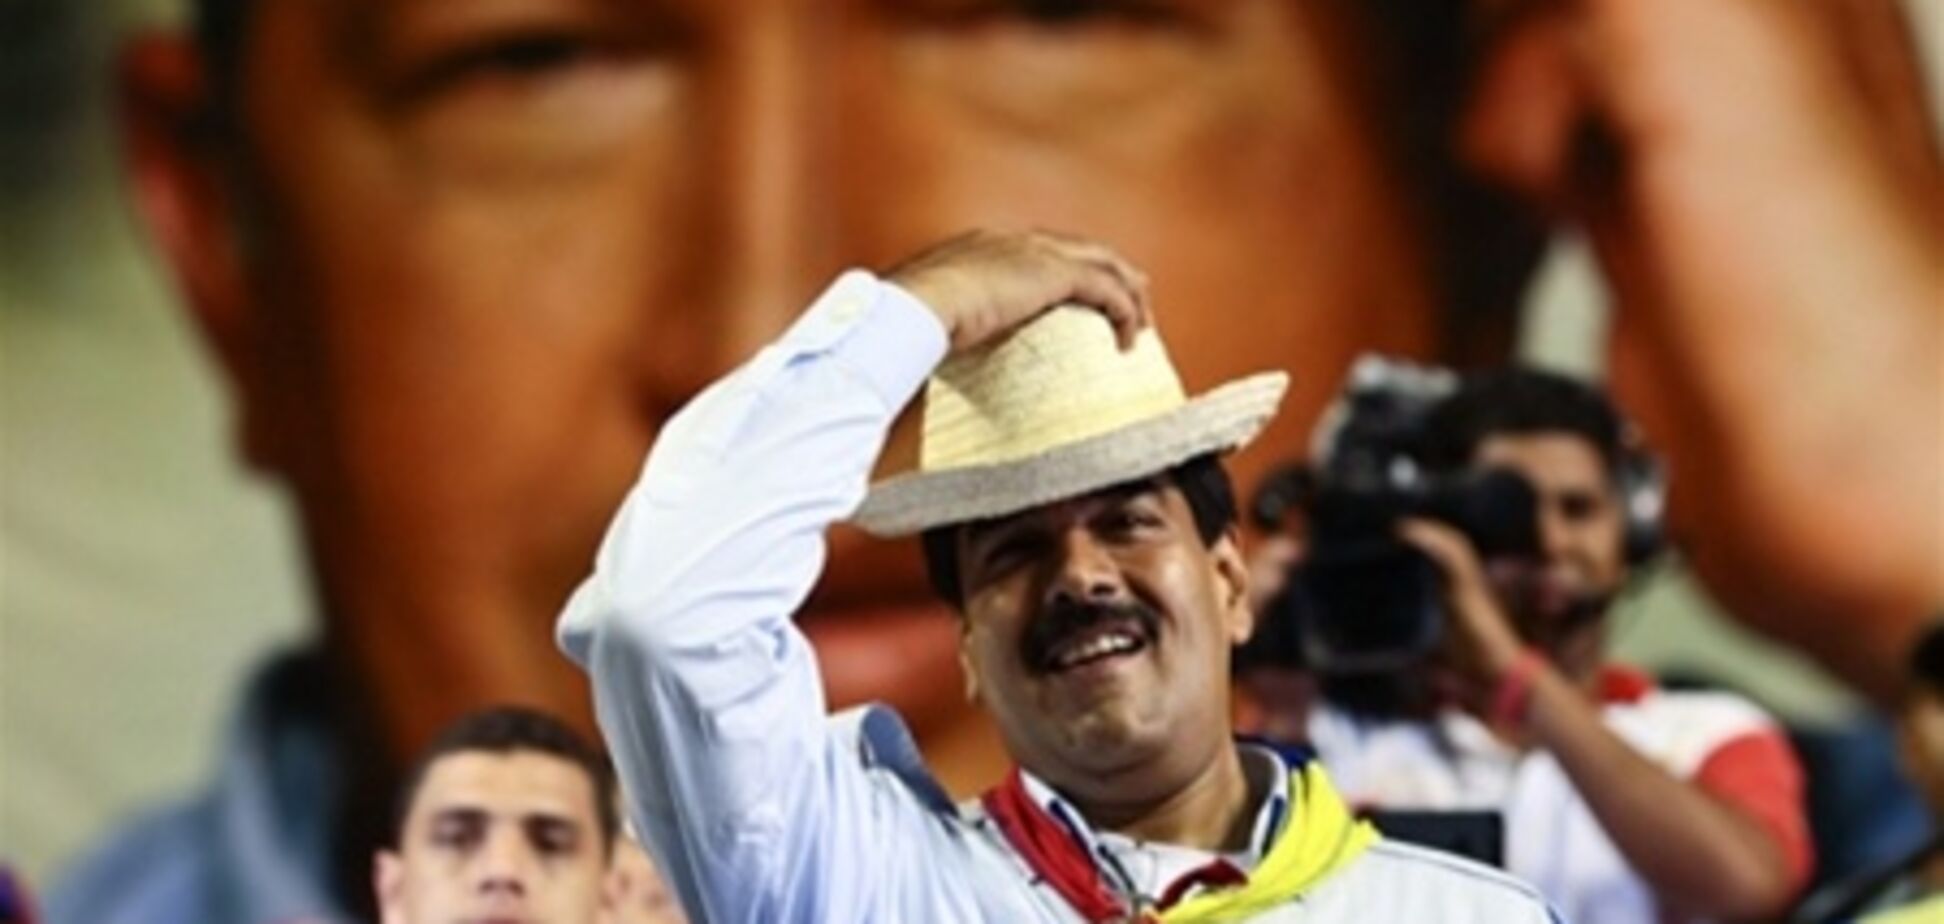 Чавес у вигляді птаха благословив свого наступника на участь у виборах